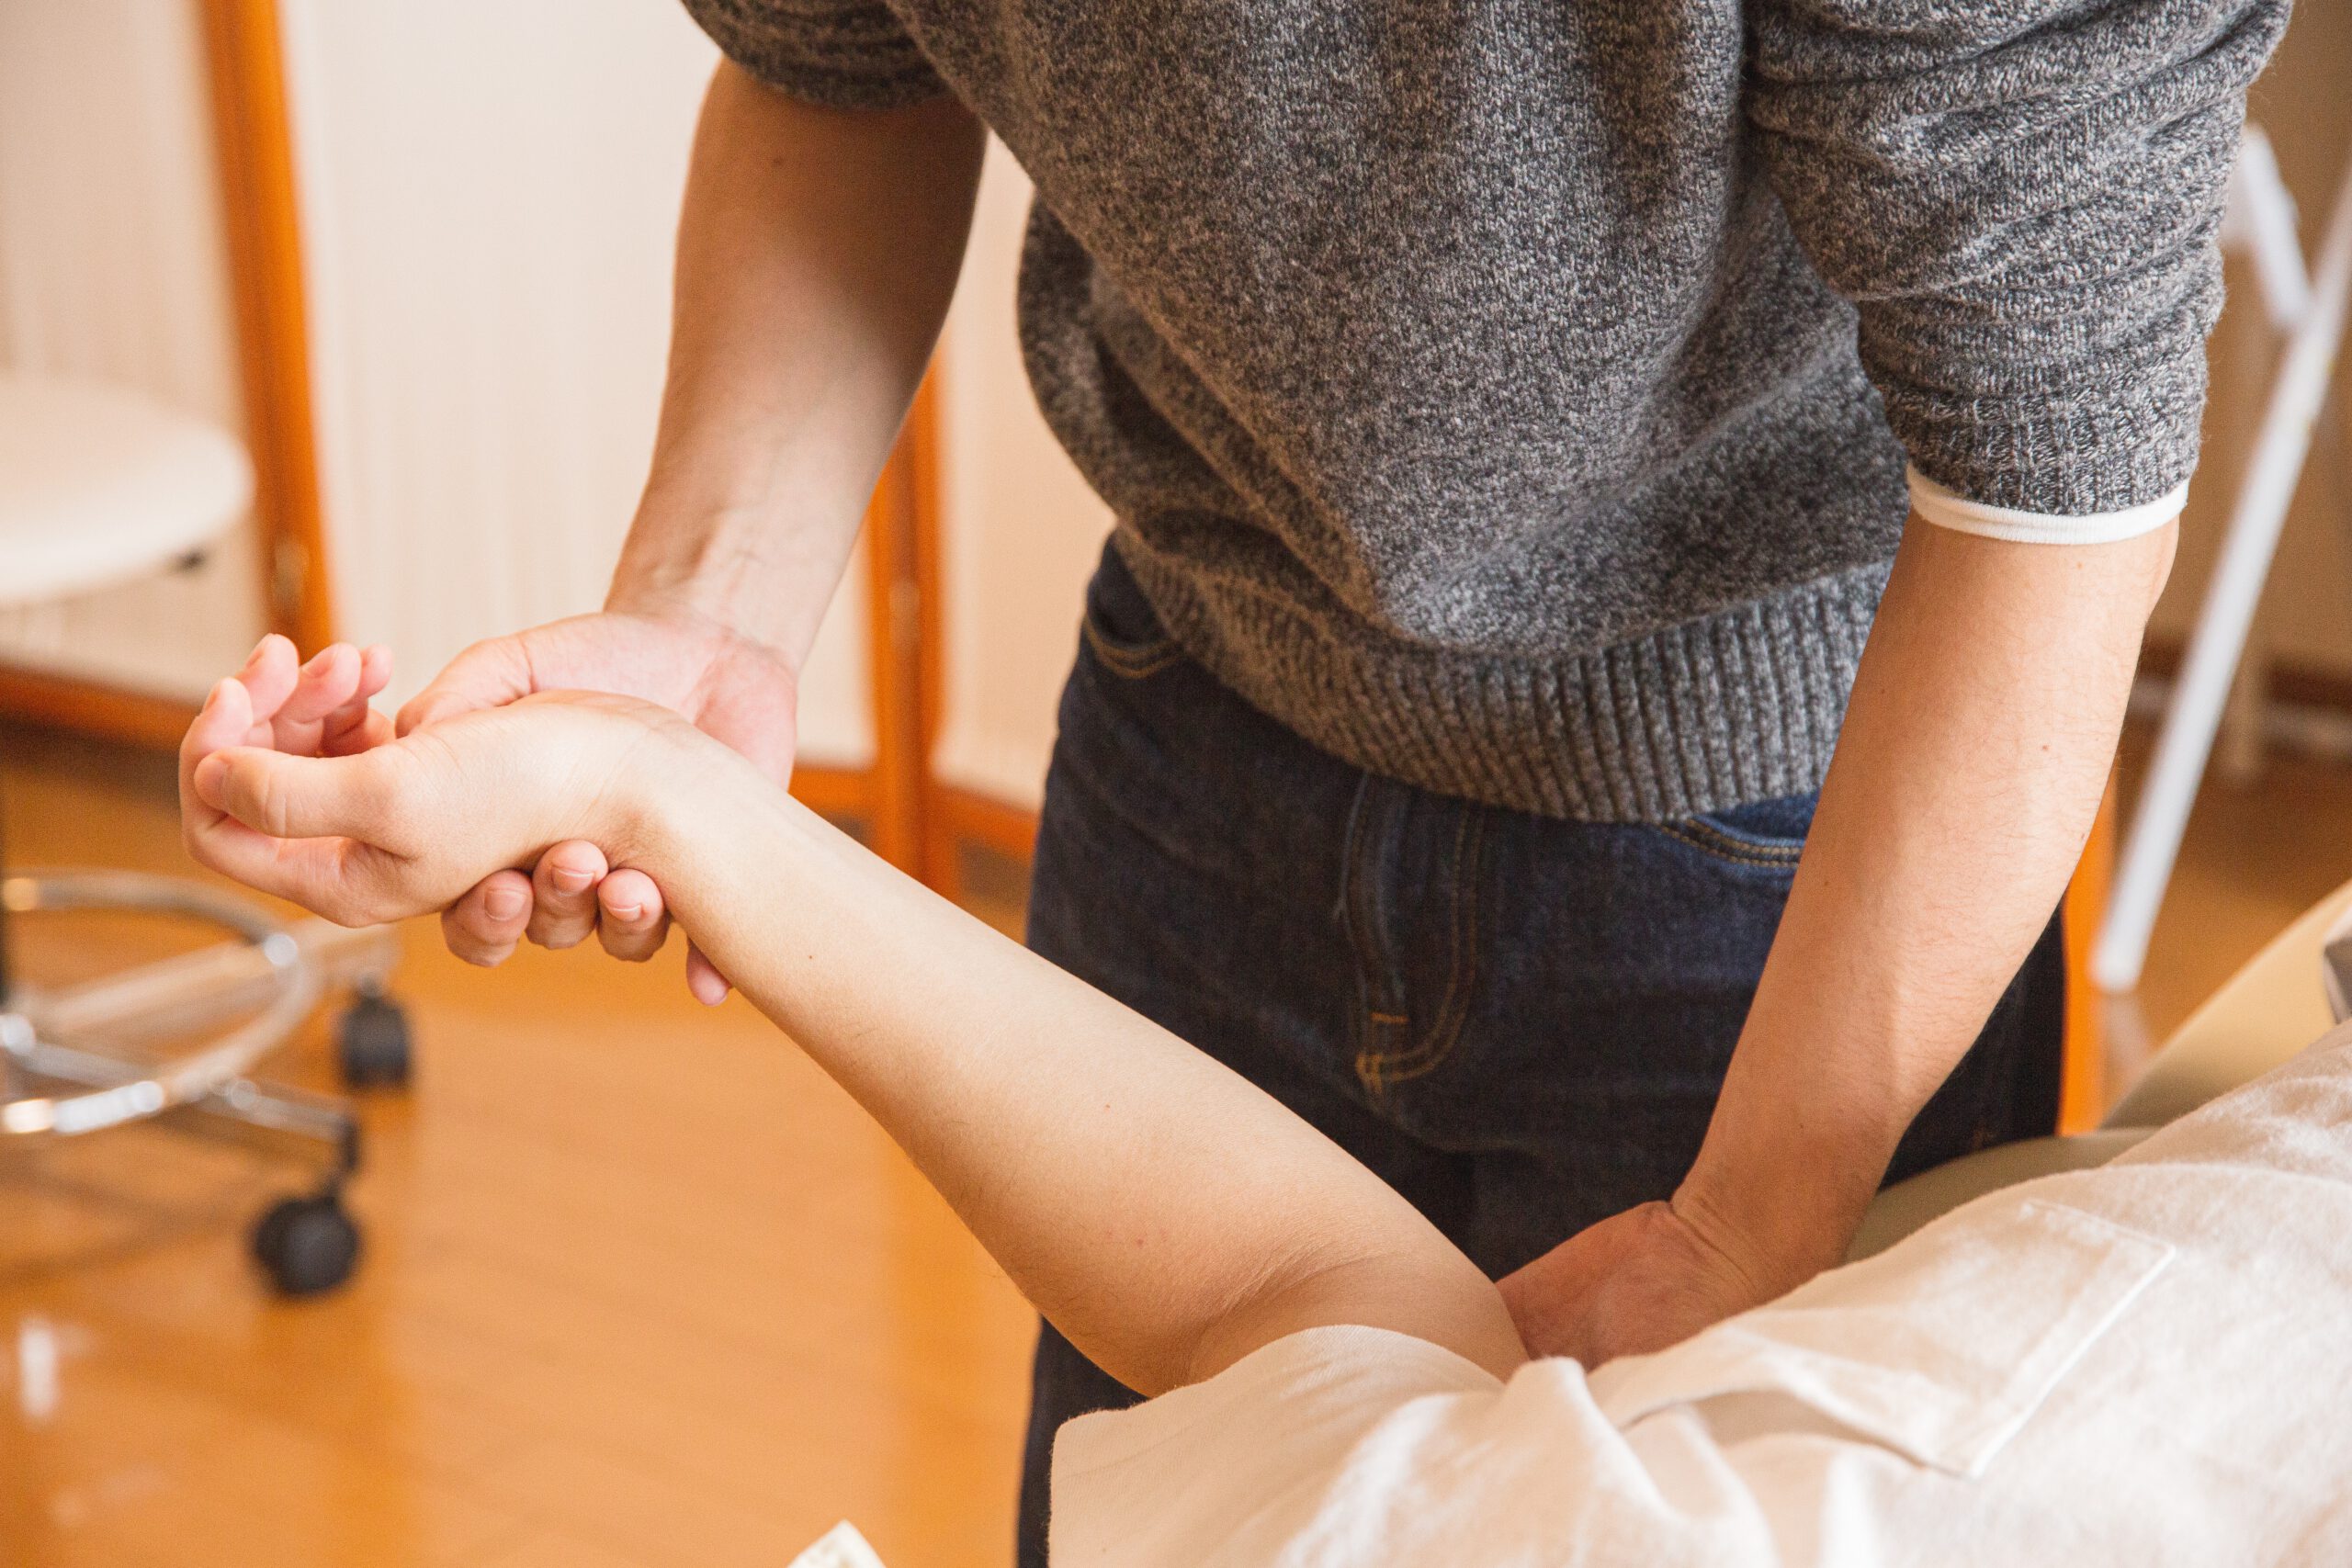 Wizyta u osteopaty może pomóc w leczeniu bóli stawów